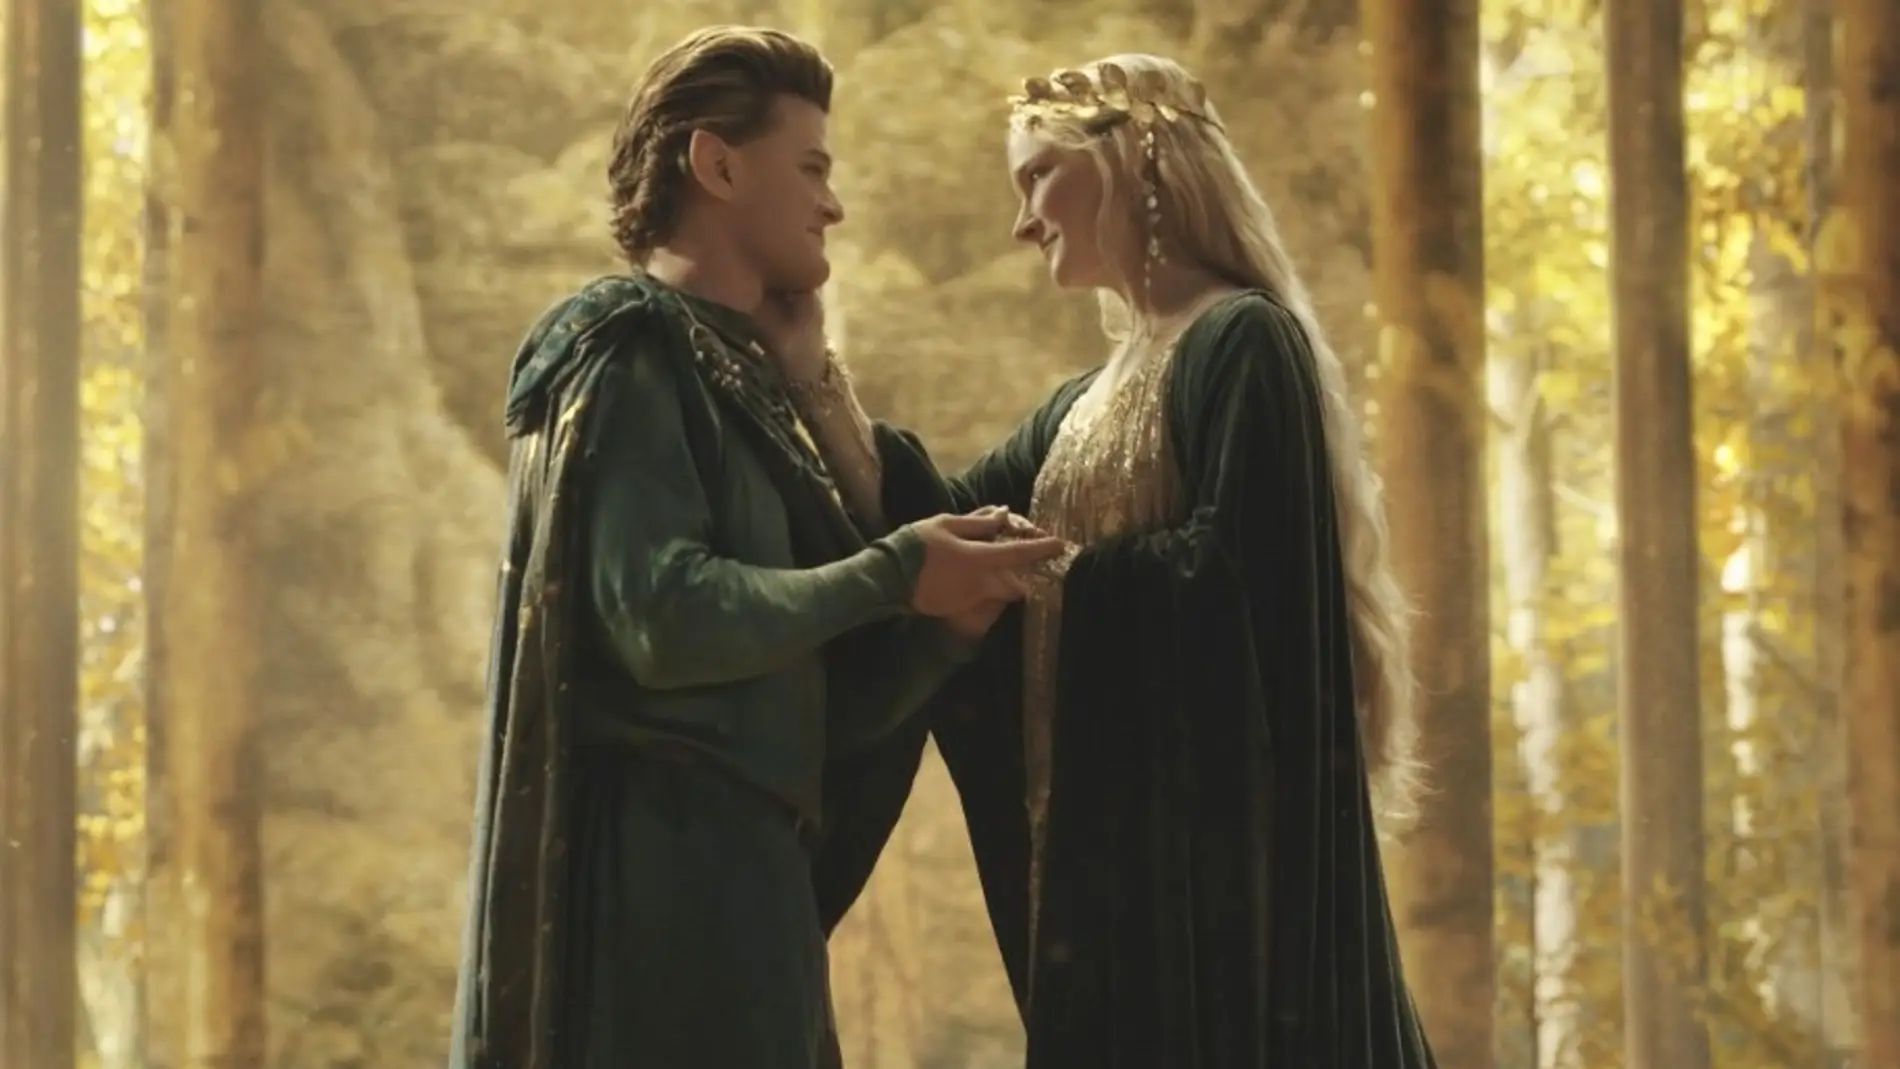 Galadriel es la suegra de Elrond: La historia de 'El Señor de los